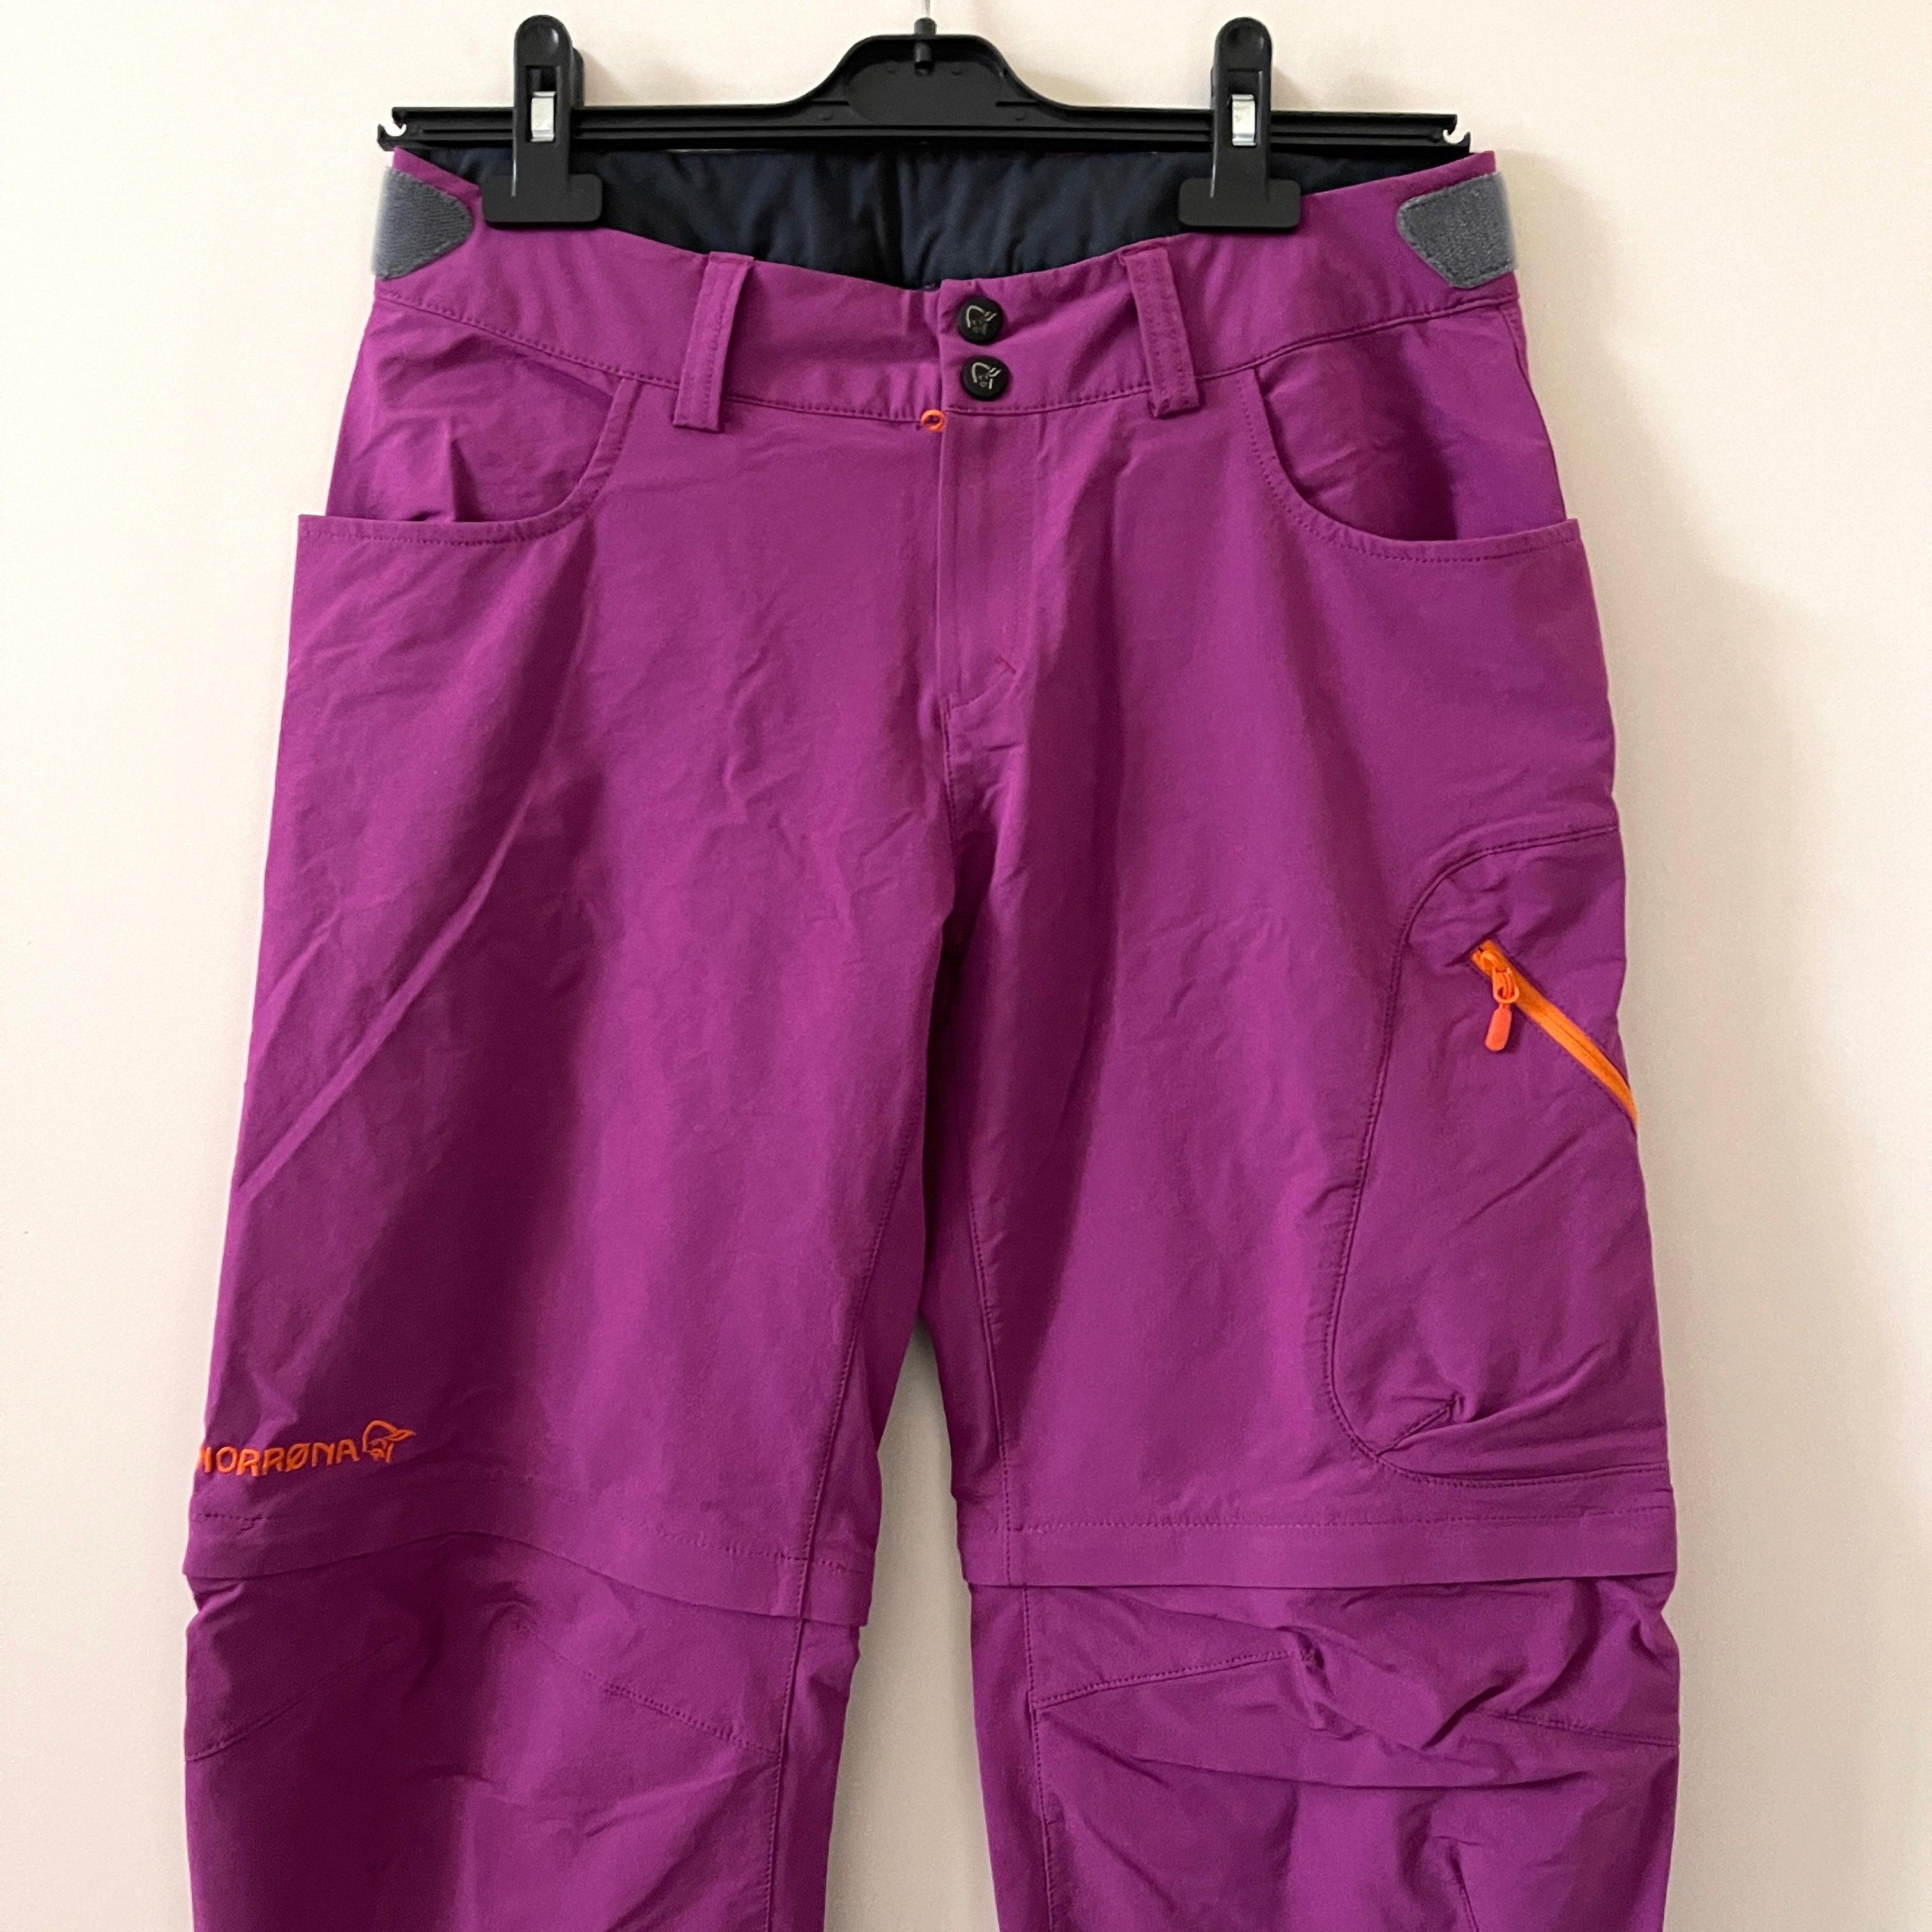 NORRONA - NORRONA Bitihorn pants/shorts - AVVIIVVA.COM